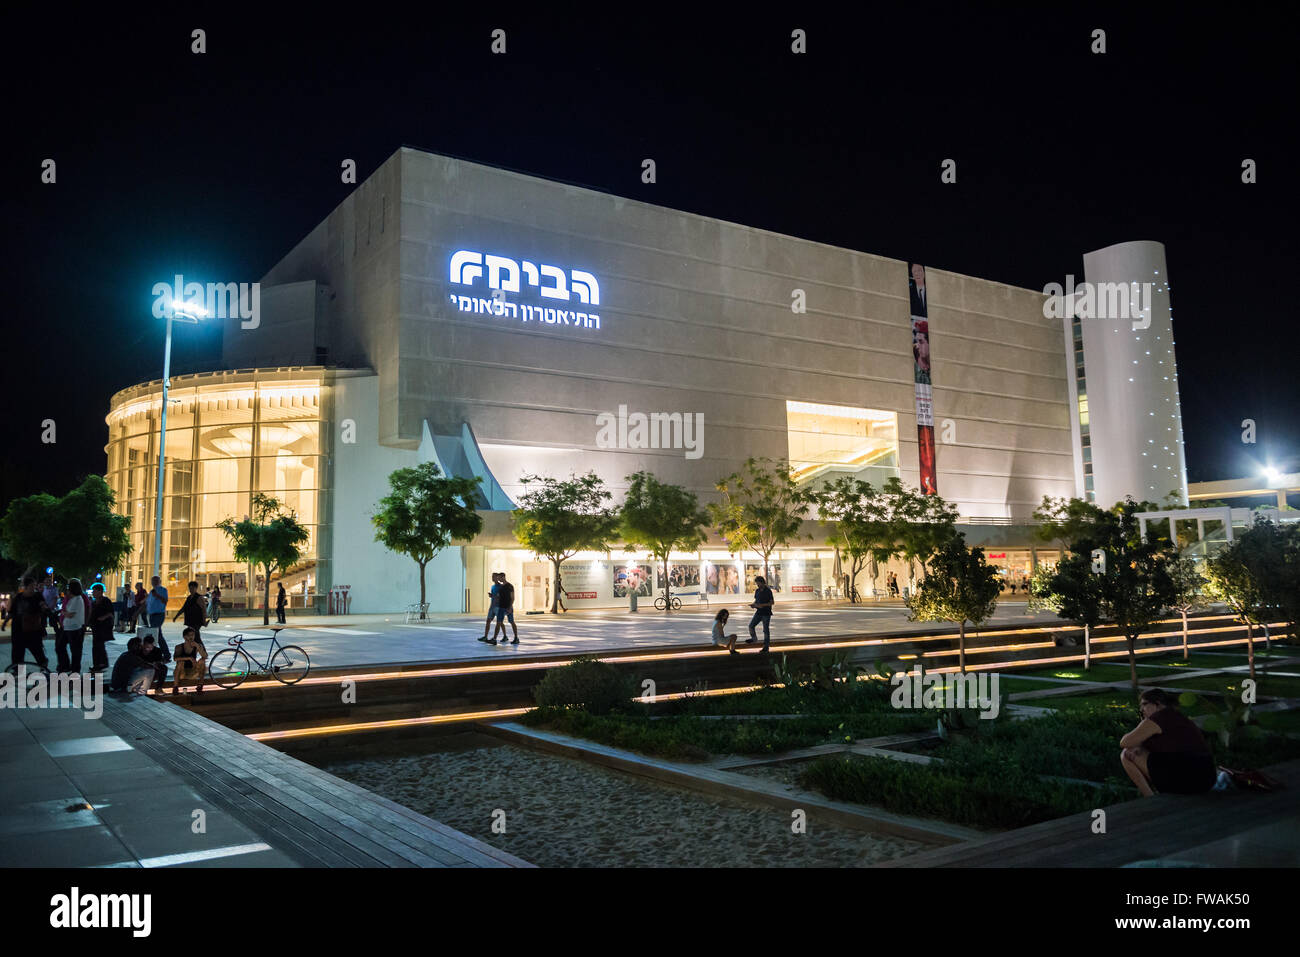 Habima Theatre at Habima Square (also called Orchestra Plaza) in Tel Aviv city, Israel Stock Photo